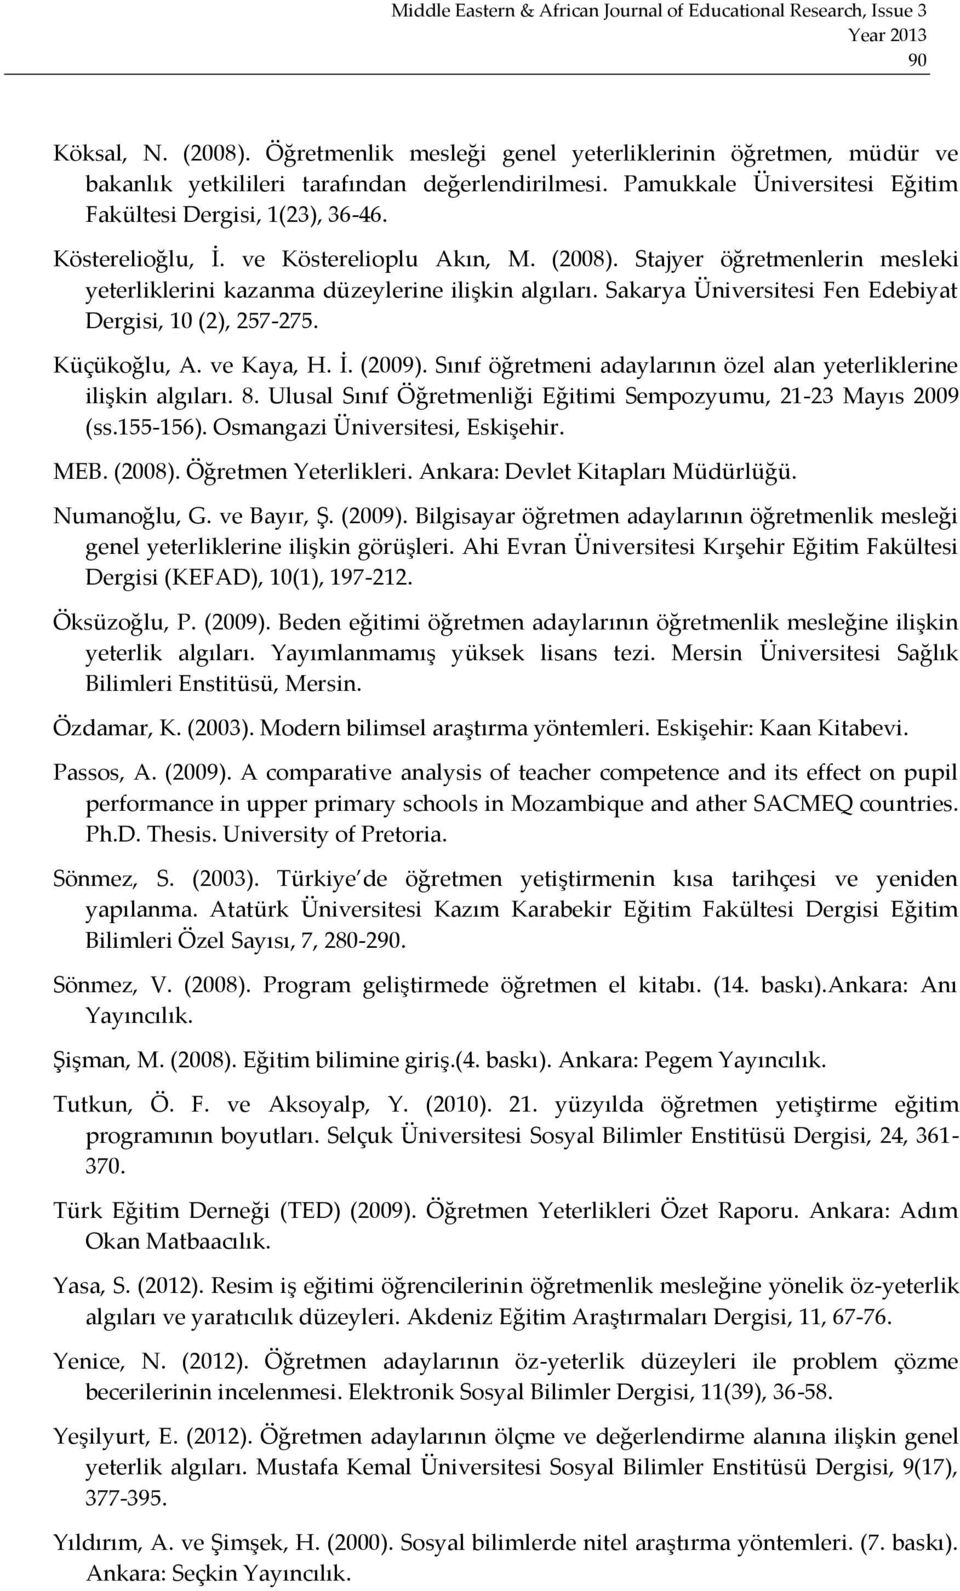 Küçükoğlu, A. ve Kaya, H. İ. (2009). Sınıf öğretmeni adaylarının özel alan yeterliklerine ilişkin algıları. 8. Ulusal Sınıf Öğretmenliği Eğitimi Sempozyumu, 21-23 Mayıs 2009 (ss.155-156).